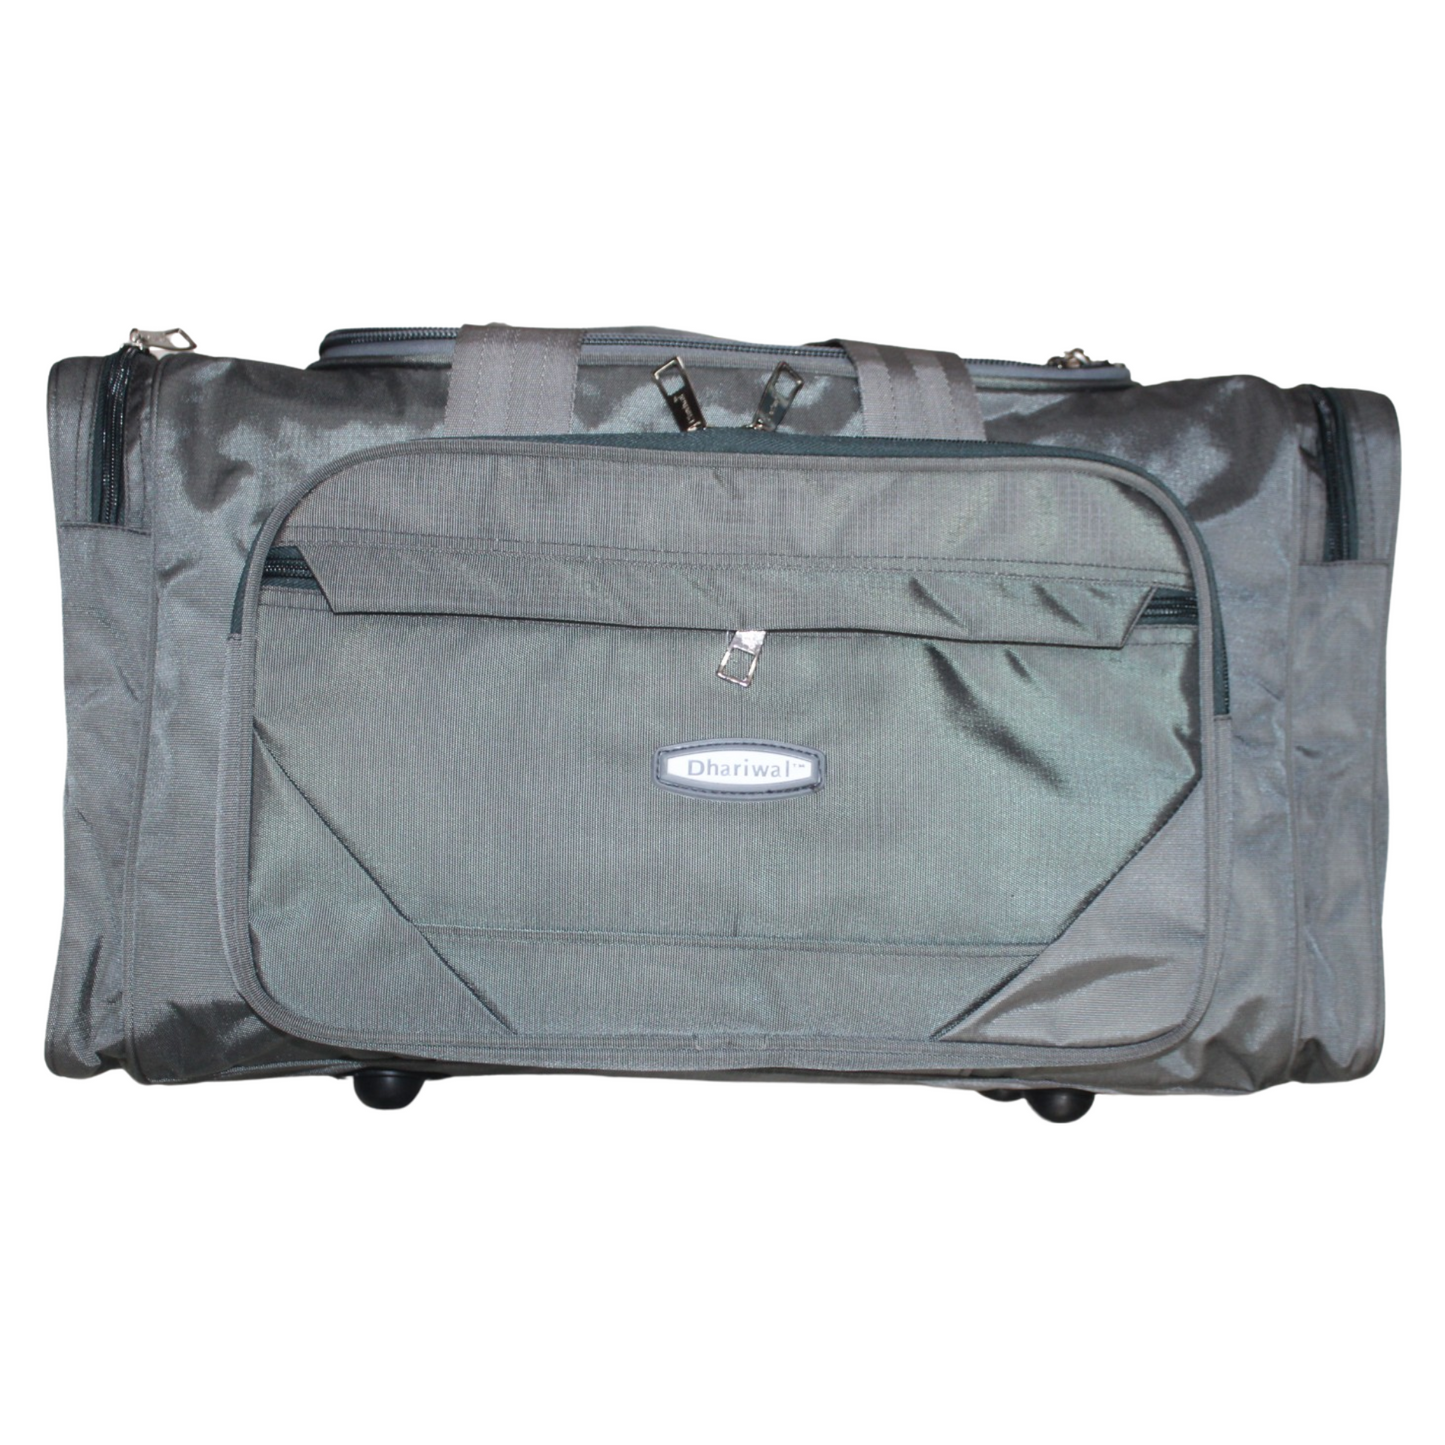 Dhariwal 20" Travelling Bag TRB-510